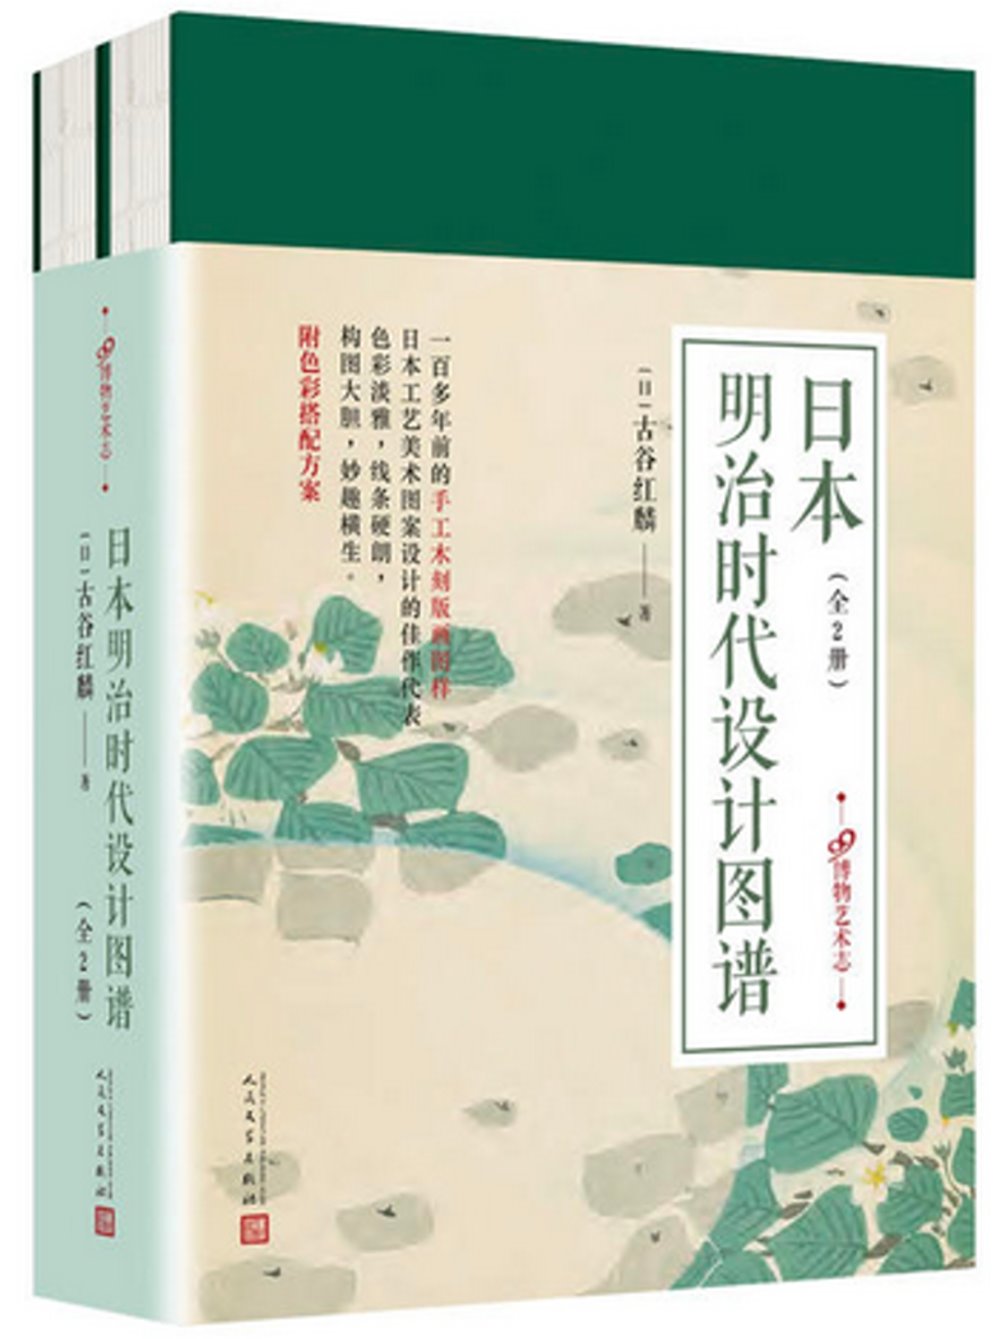 日本明治時代設計圖譜(全2冊)